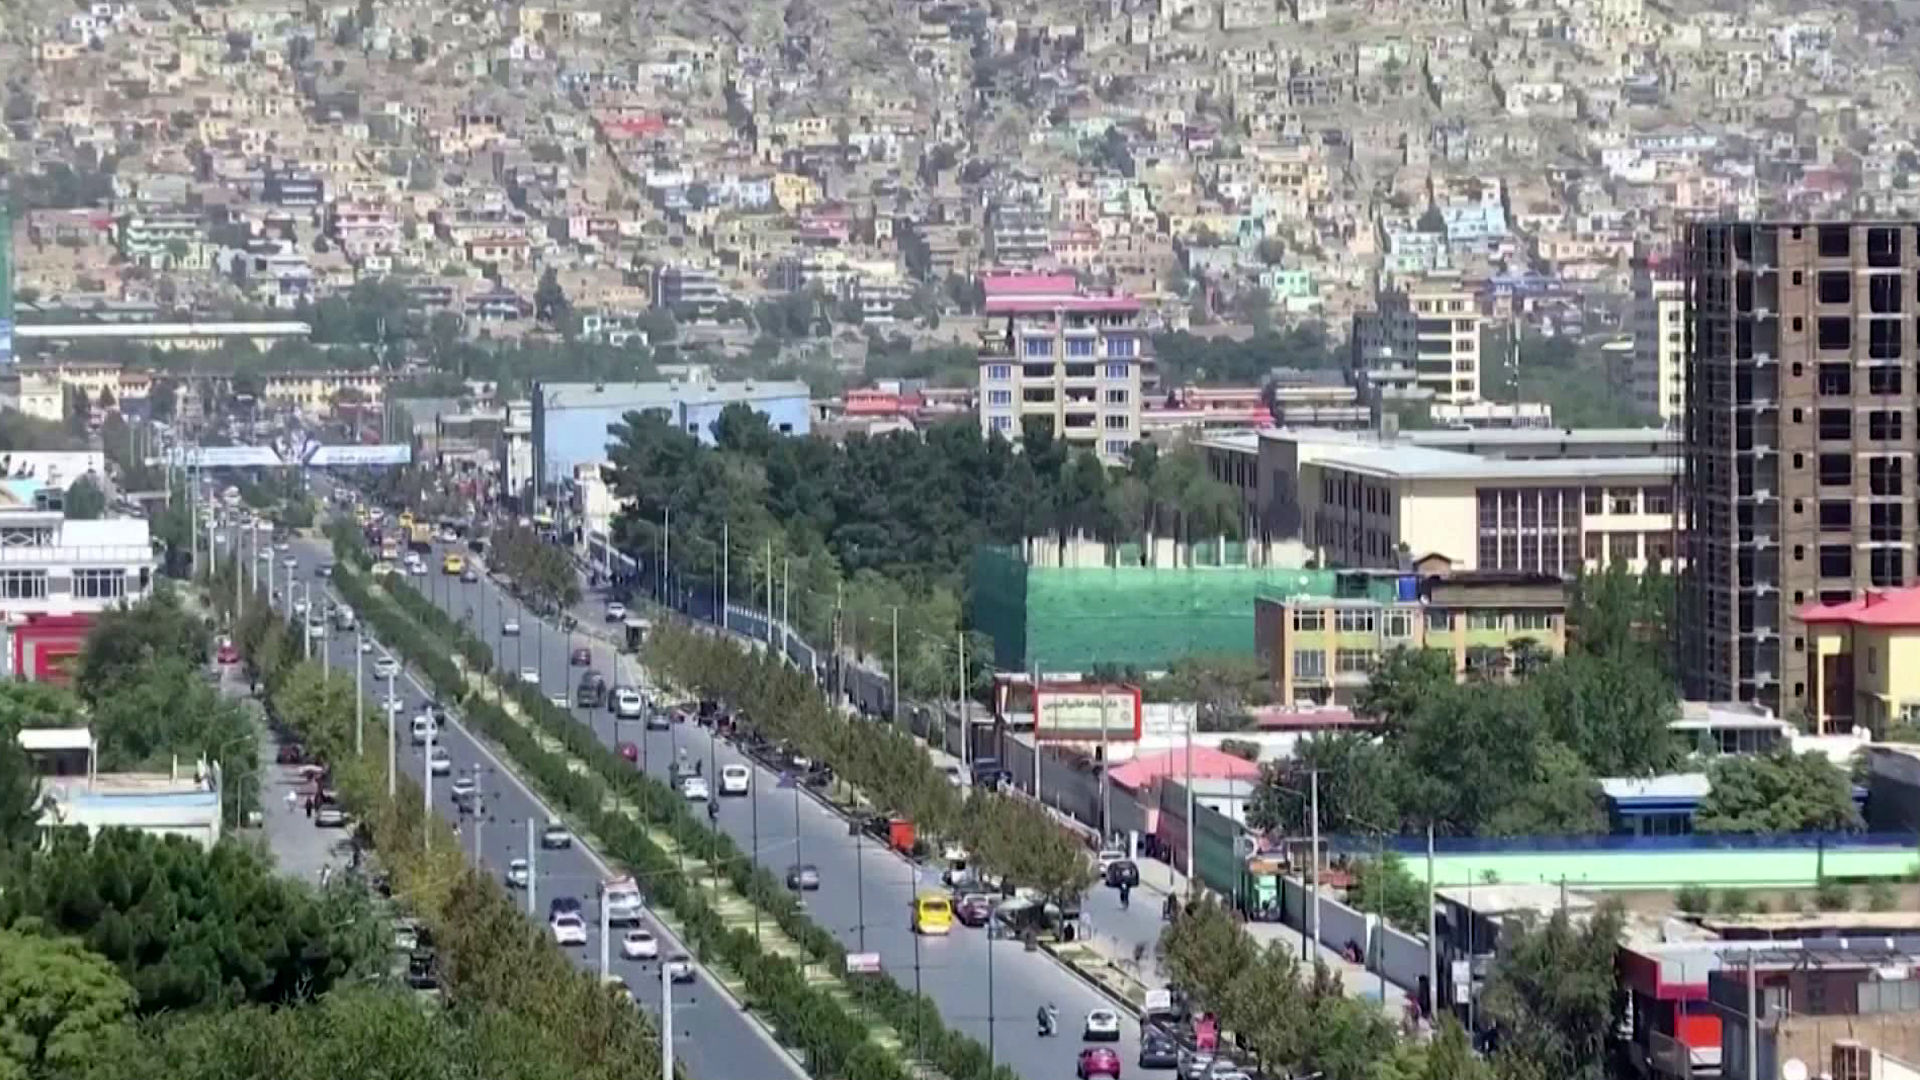 عکس جالب از پایتخت افغانستان، ۷۷ سال پیش!